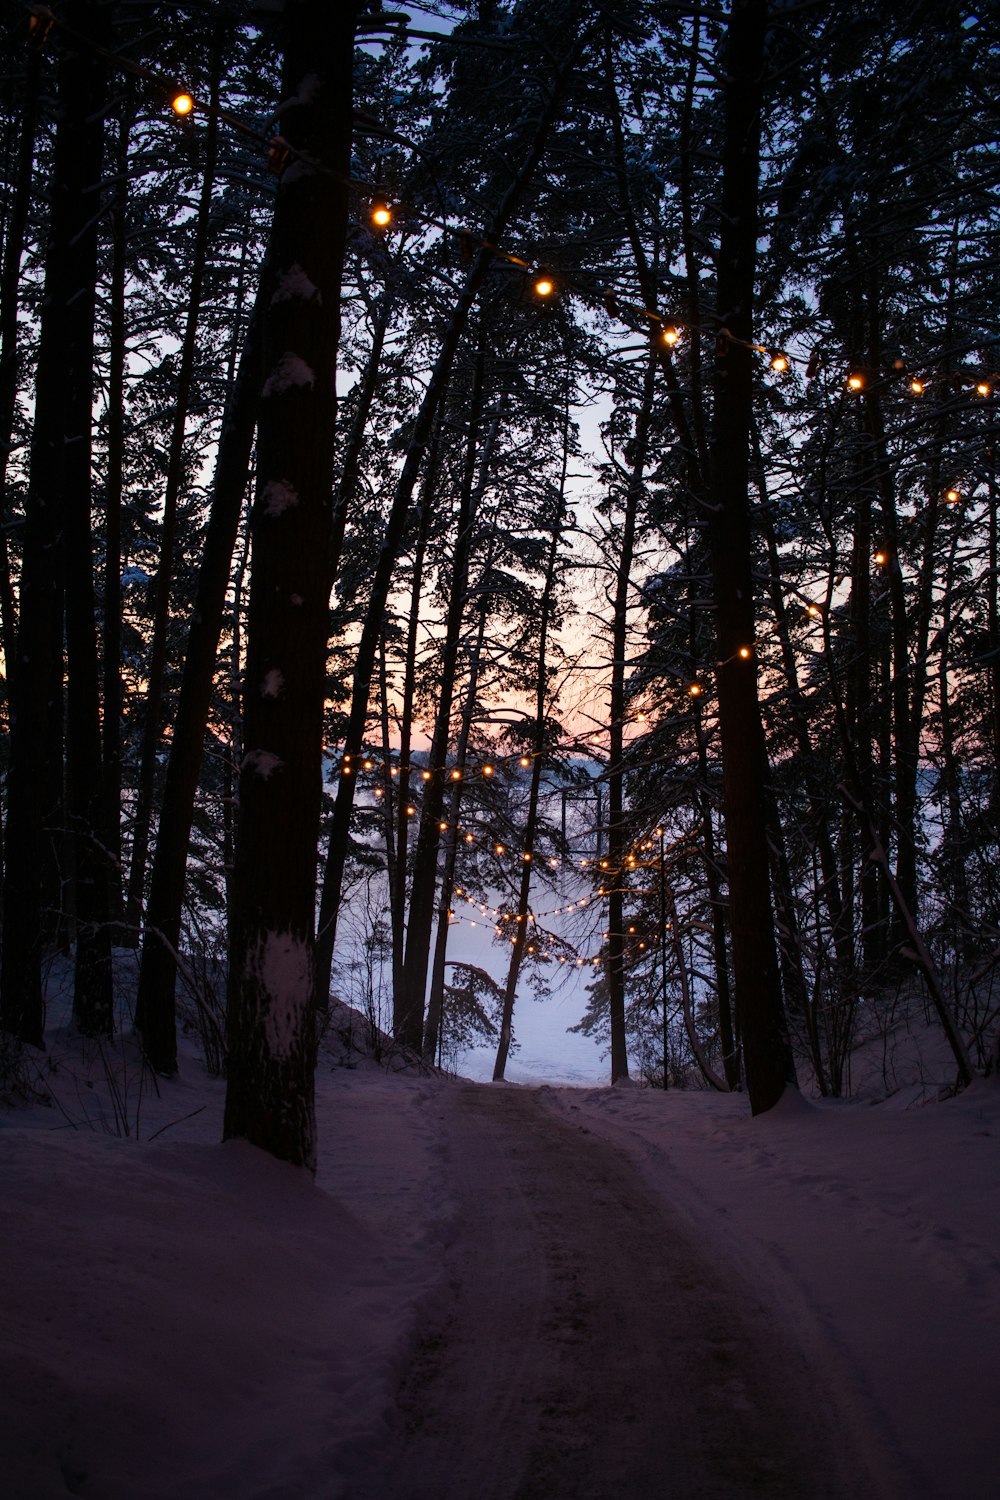 Un camino a través de un bosque nevado con luces colgadas de los árboles